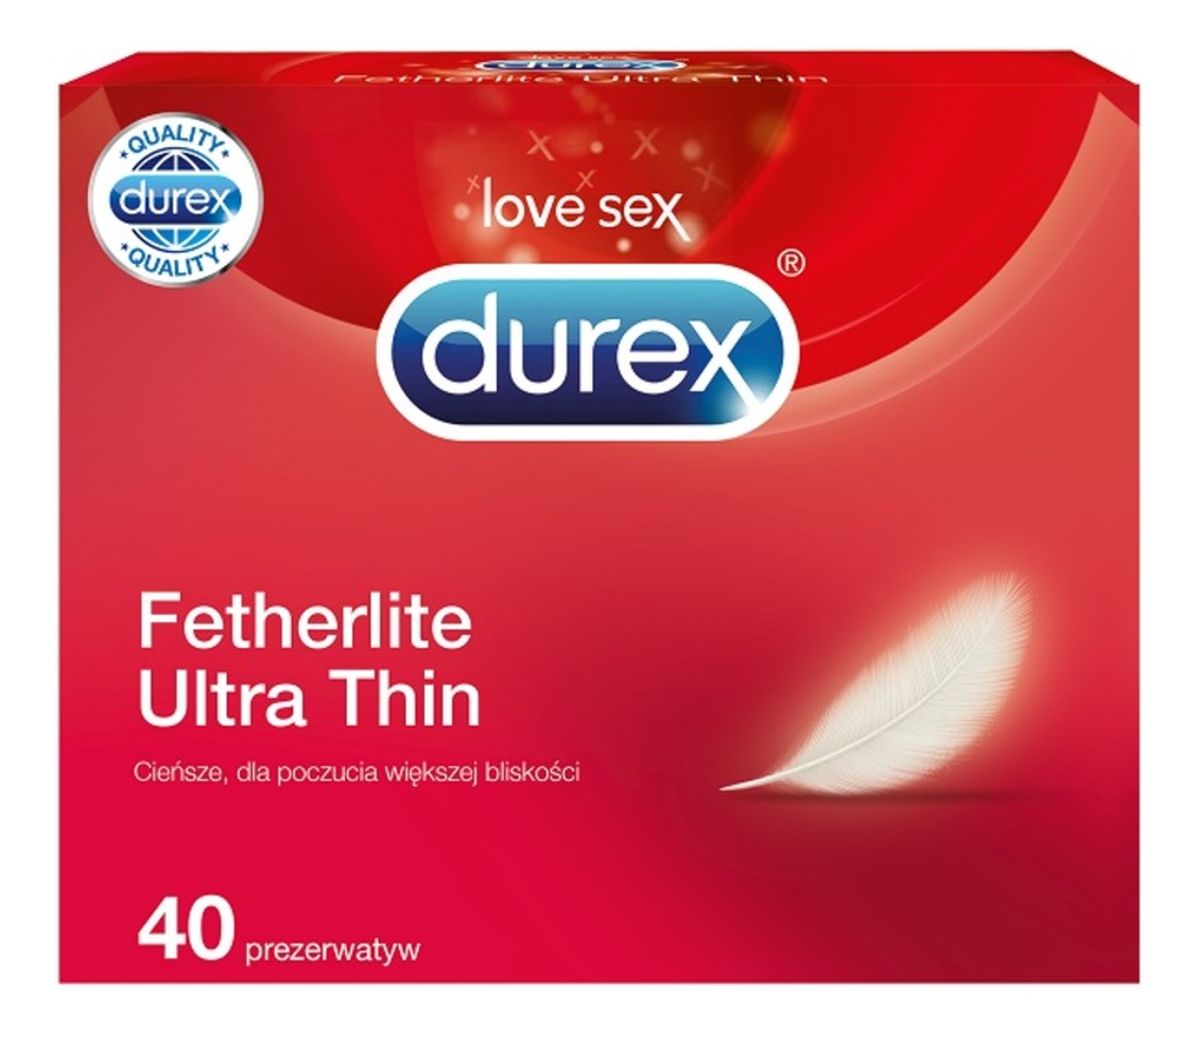 cieńsze prezerwatywy dla poczucia większej bliskości 40szt